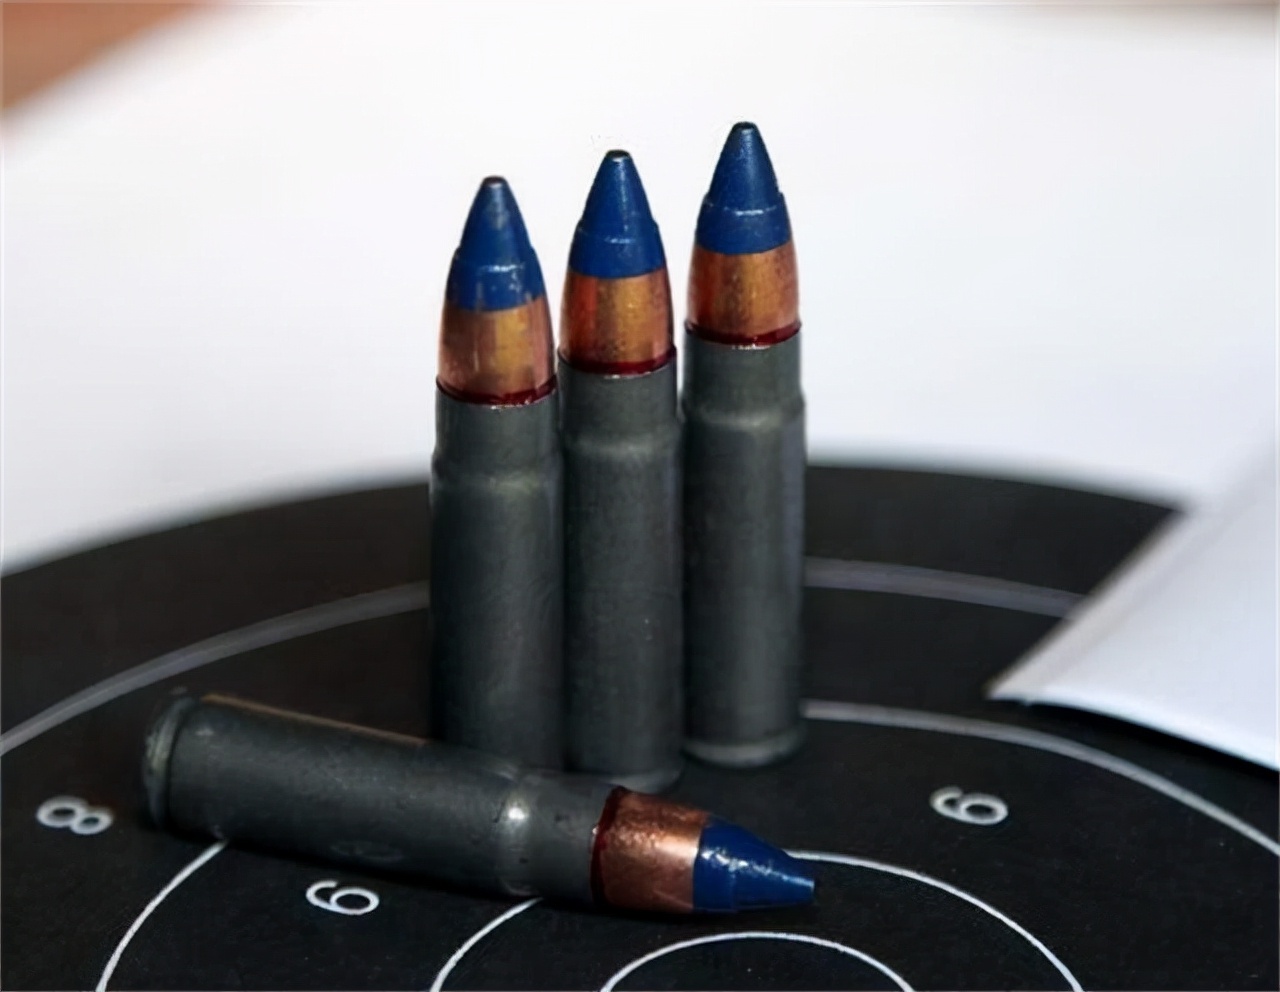 军工艺品子弹壳金属左轮手枪模型弹壳金属工艺品军旅纪念品批发-阿里巴巴